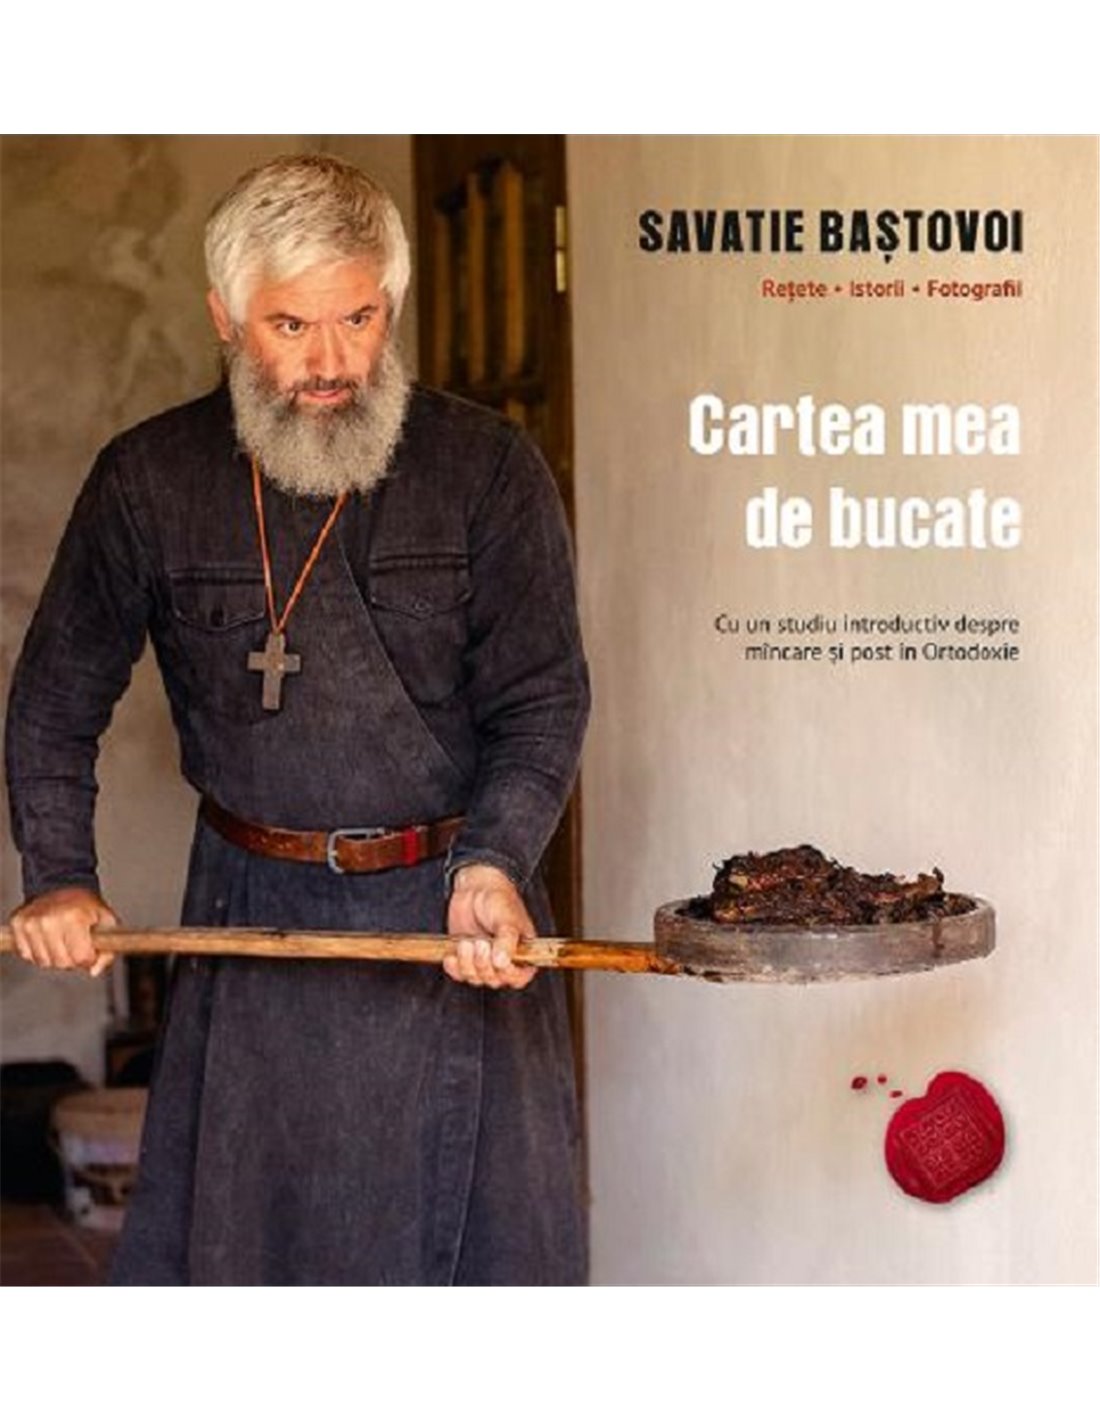 Cartea mea de bucate - Savatie Bastovoi | Editura Cathisma